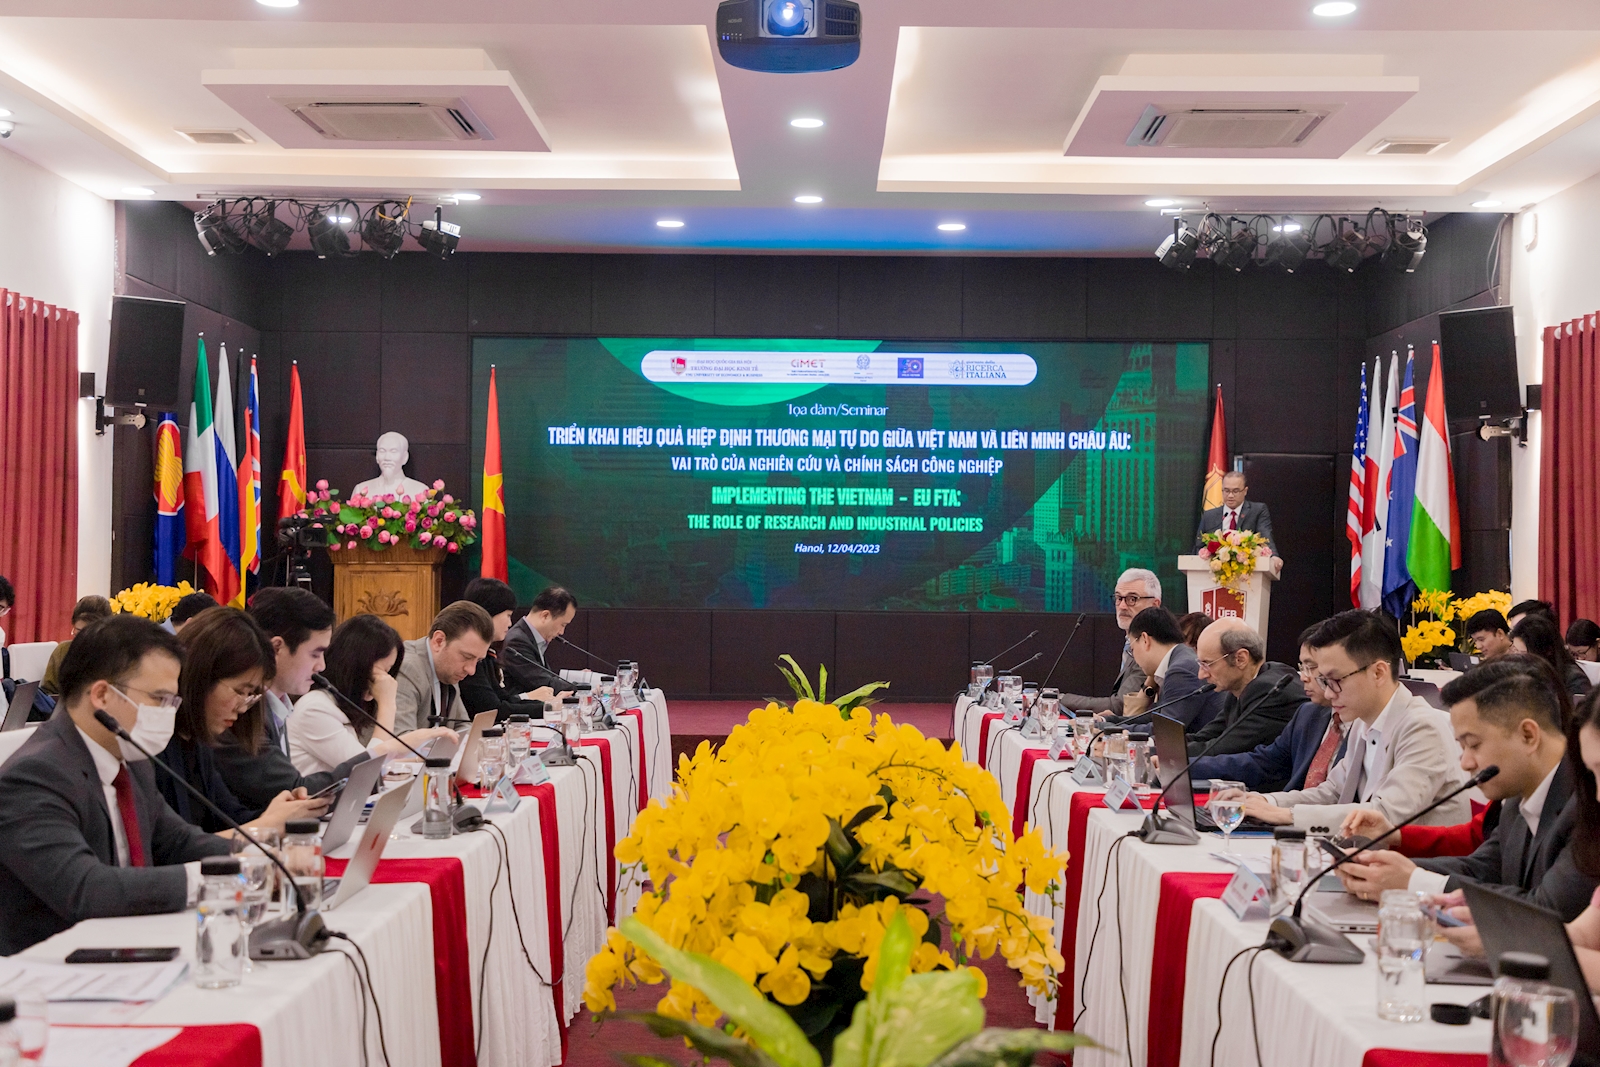 Triển khai hiệu quả hiệp định thương mại tự do giữa Việt Nam và Liên Minh Châu Âu: Vai trò của nghiên cứu và chính sách công nghiệp